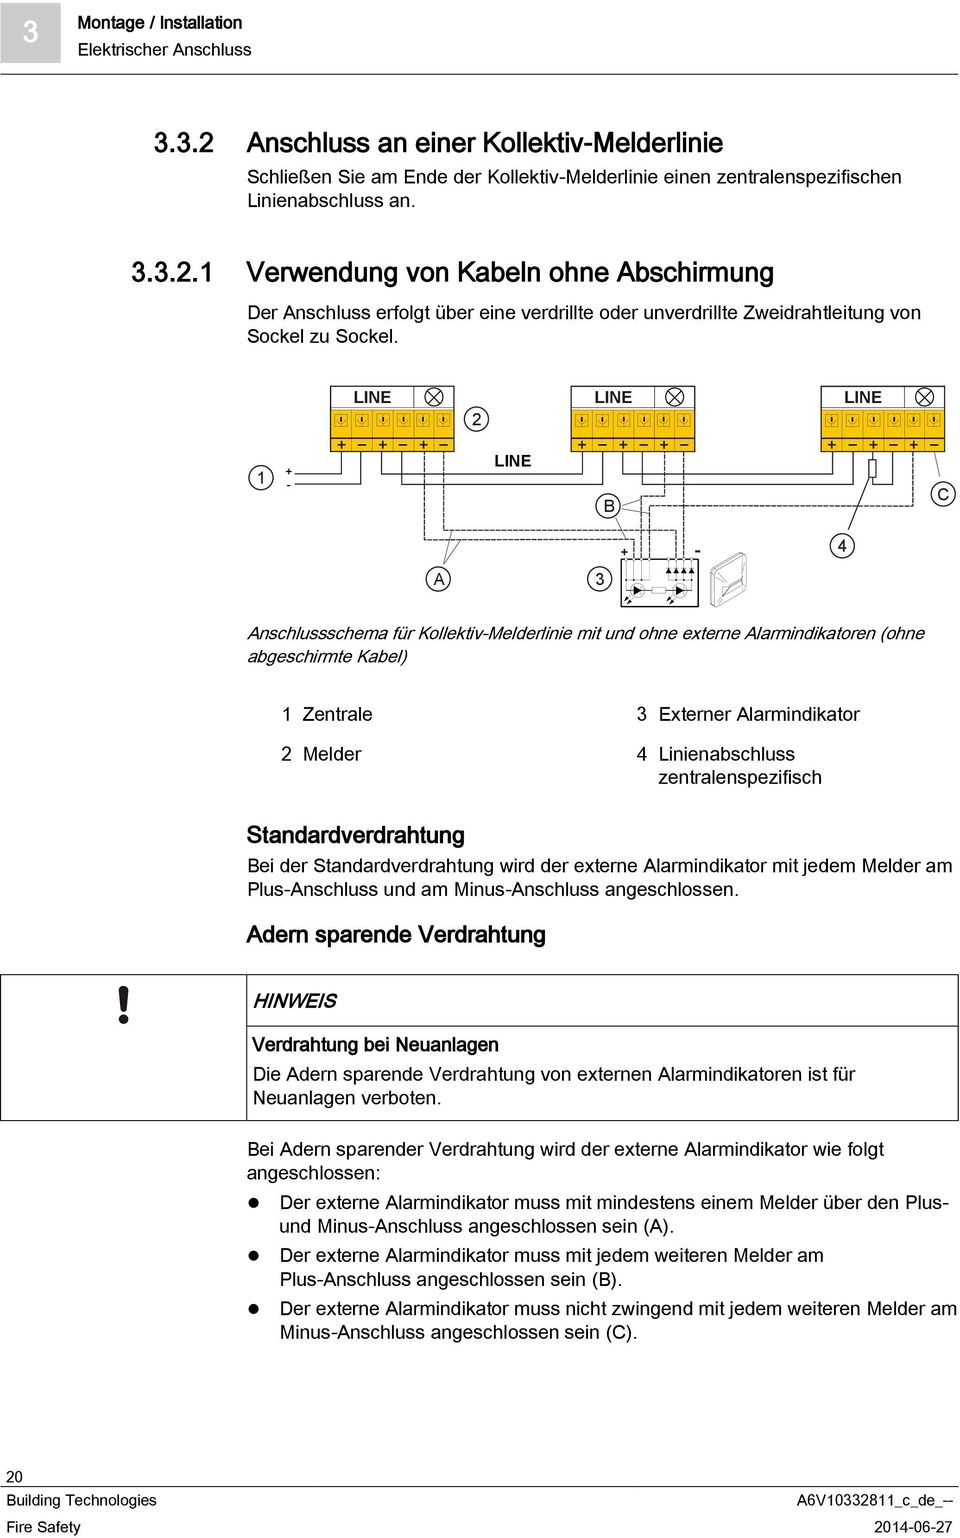 Alarmindikator 2 Melder 4 Linienabschluss zentralenspezifisch Standardverdrahtung Bei der Standardverdrahtung wird der externe Alarmindikator mit jedem Melder am Plus-Anschluss und am Minus-Anschluss